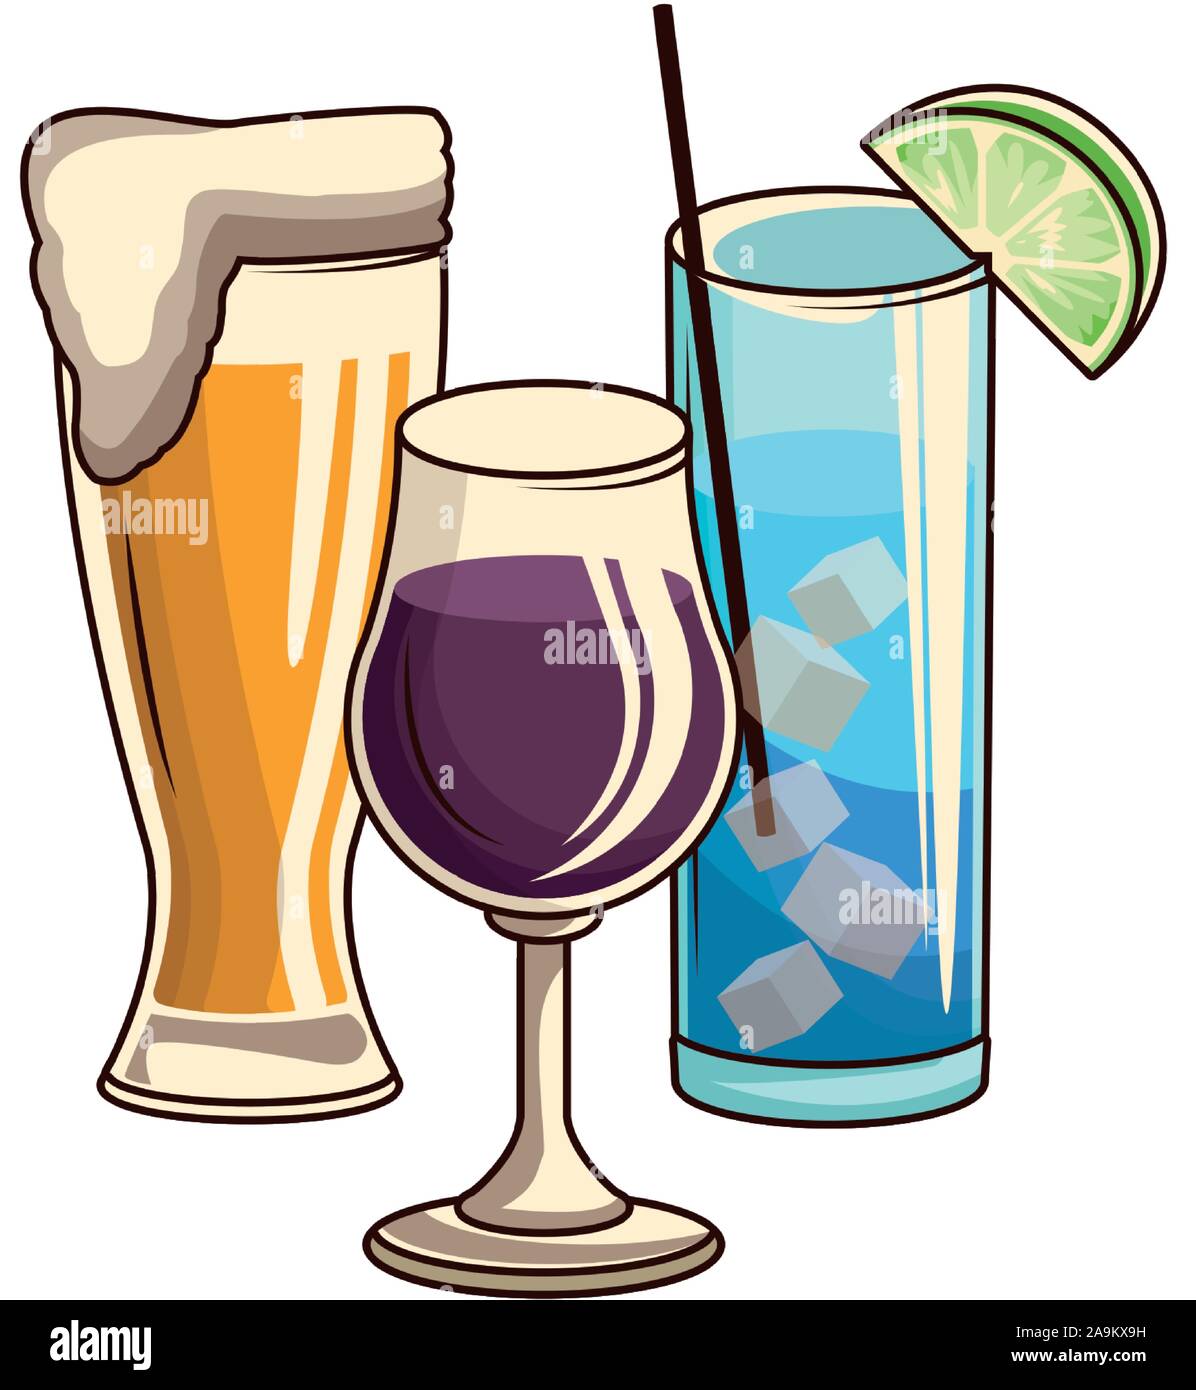 Vaso de cerveza y cócteles icono de gafas Ilustración del Vector